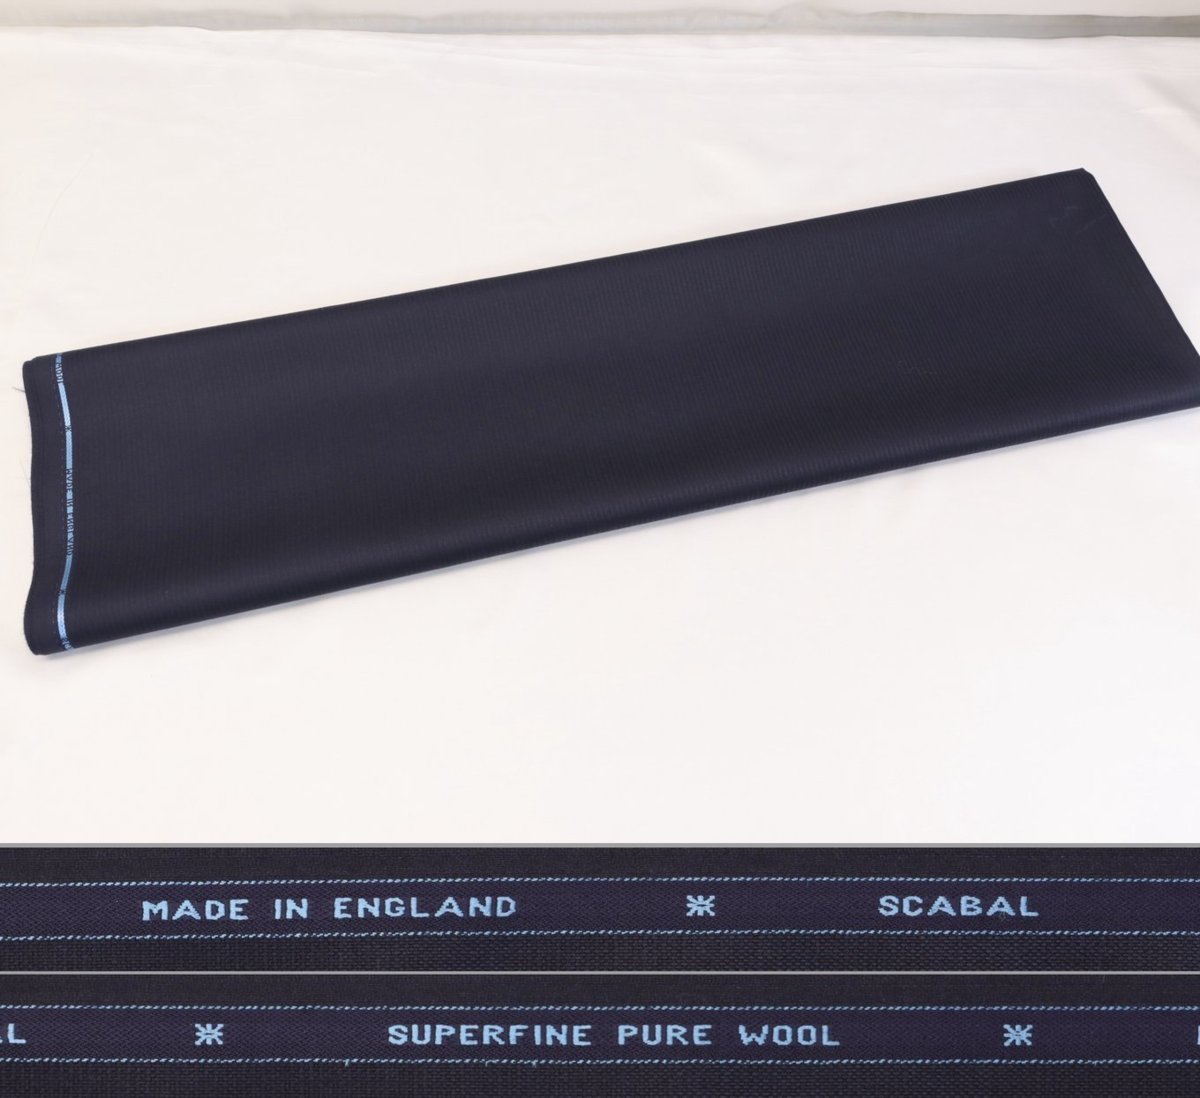 ■スキャバル社「トルネード」・艶々の濃紺ロンドンストライプ風・スーパーファインで仕立て映え良し・生地価格１８万円・長さ3.3m_画像2